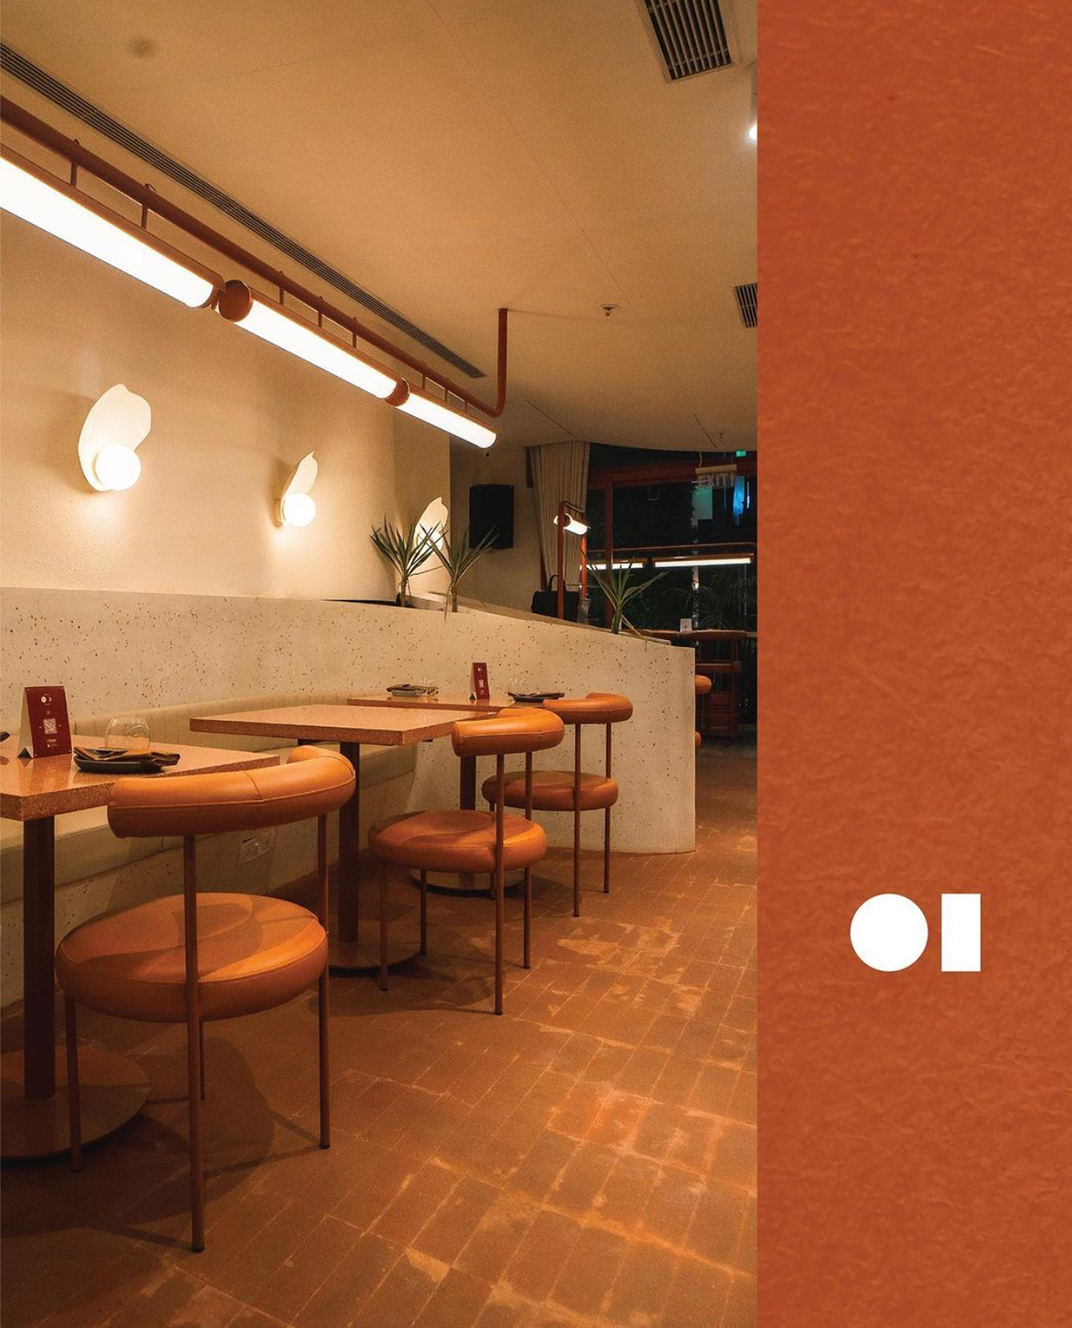 鸡尾酒吧Rosie & Tillie by ATE 印度 酒吧 小酒馆 红色 铁管 瓷砖 logo设计 vi设计 空间设计